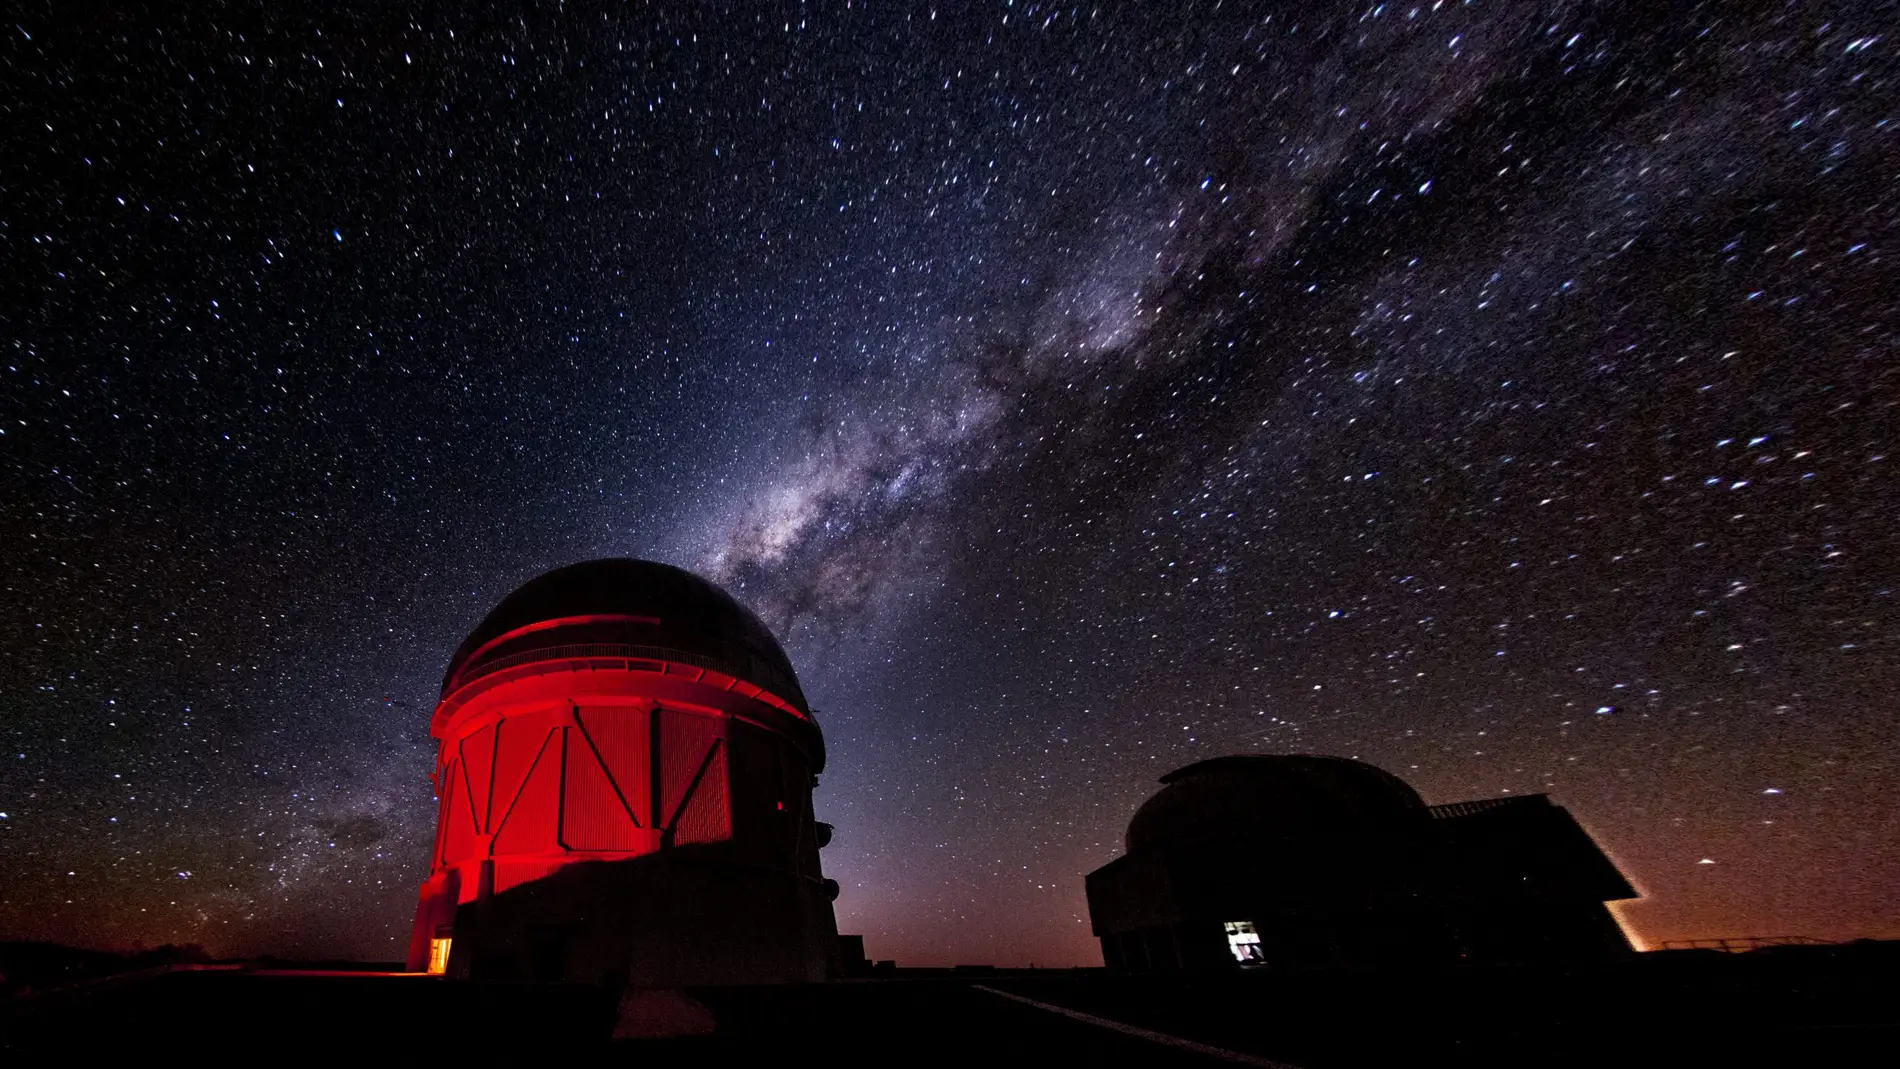 Nuevo catalogo publico con casi 700 millones de objetos astronomicos